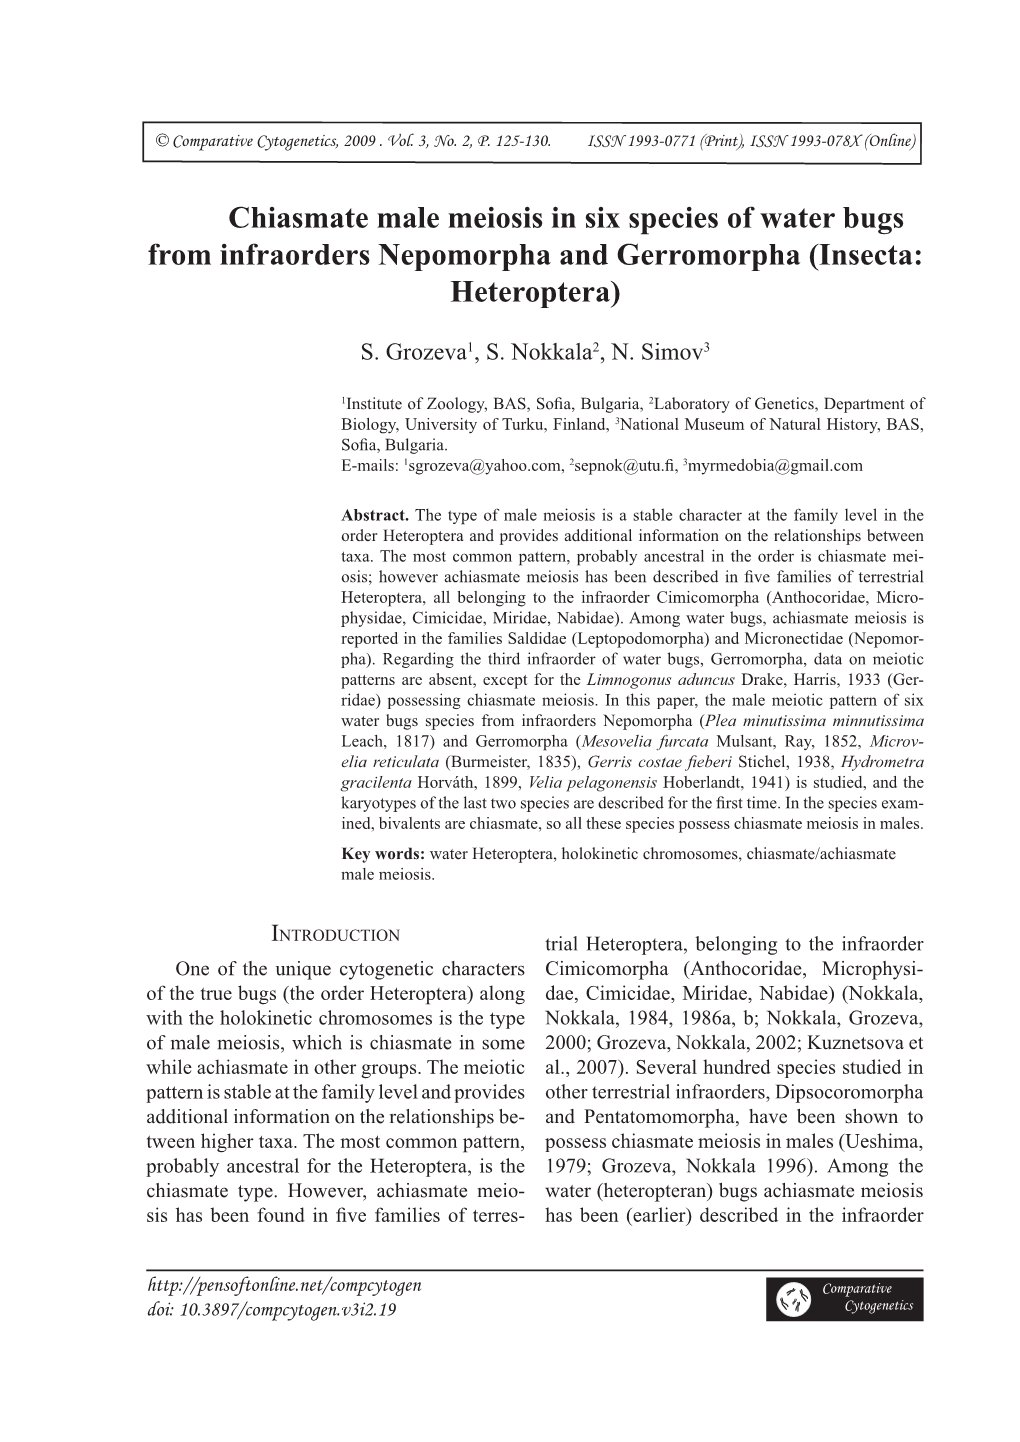 Chiasmate Male Meiosis in Six Species of Water Bugs from Infraorders Nepomorpha and Gerromorpha (Insecta: Heteroptera)